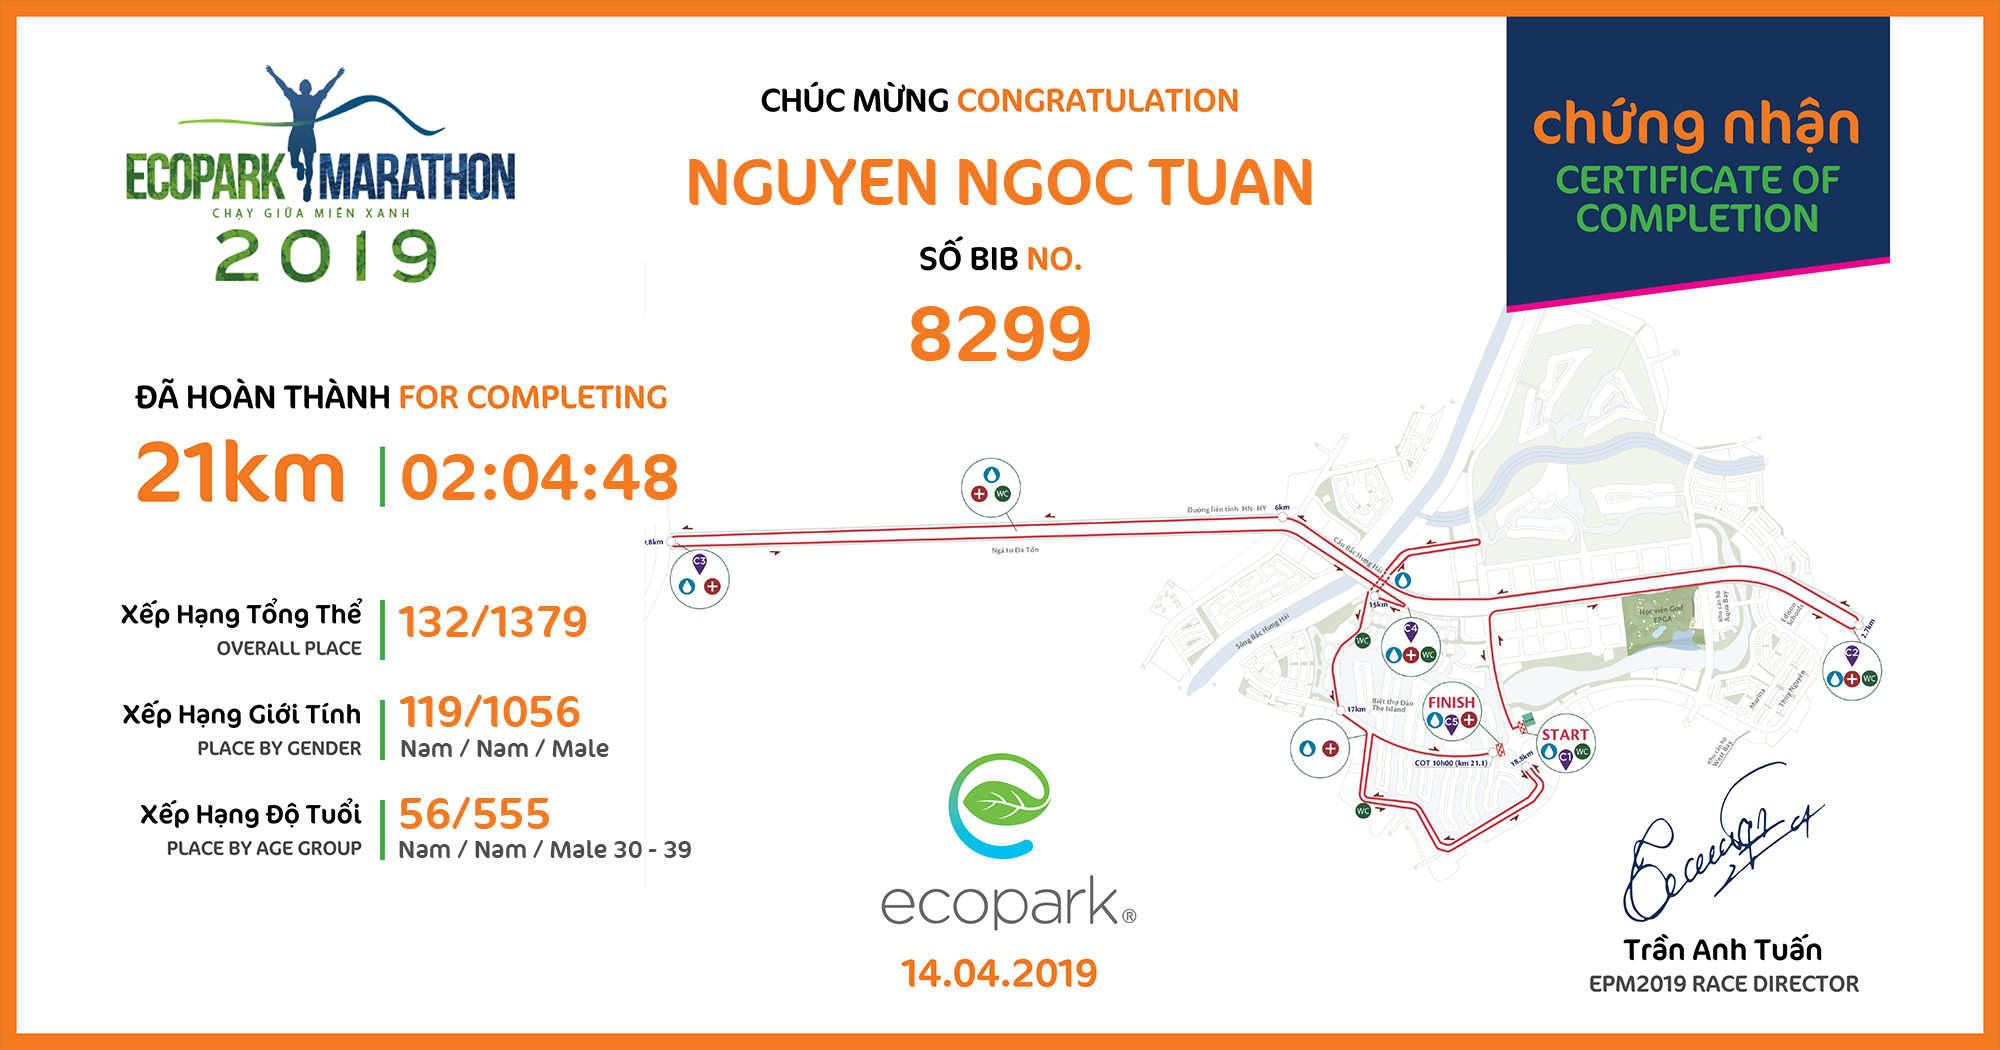 8299 - Nguyen Ngoc Tuan